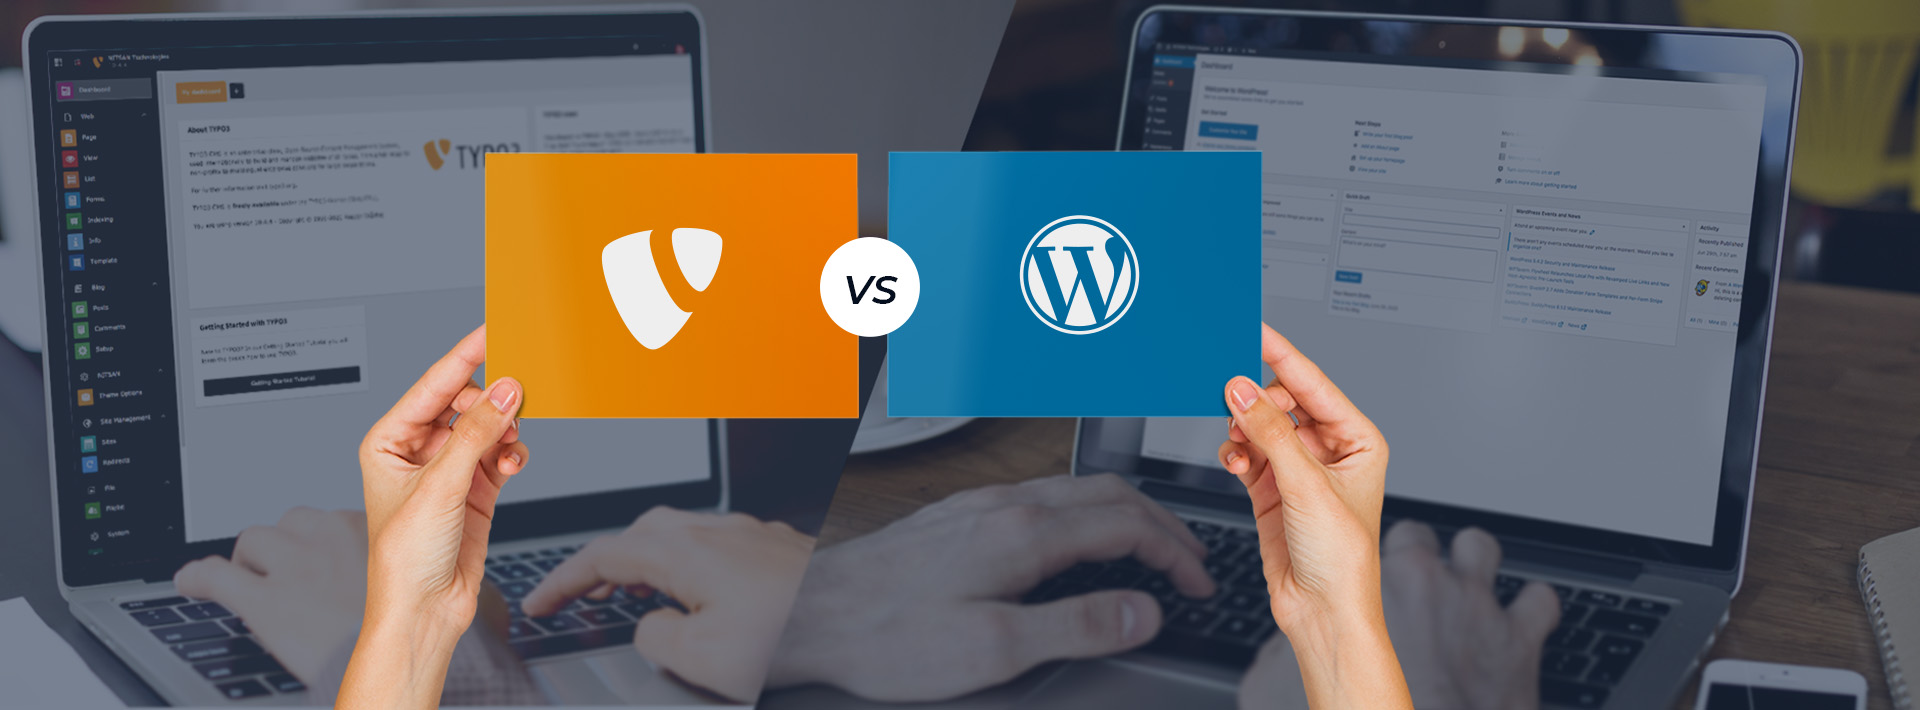 TYPO3 vs. WordPress - Die Wahl der richtigen Plattform als Content Editor!